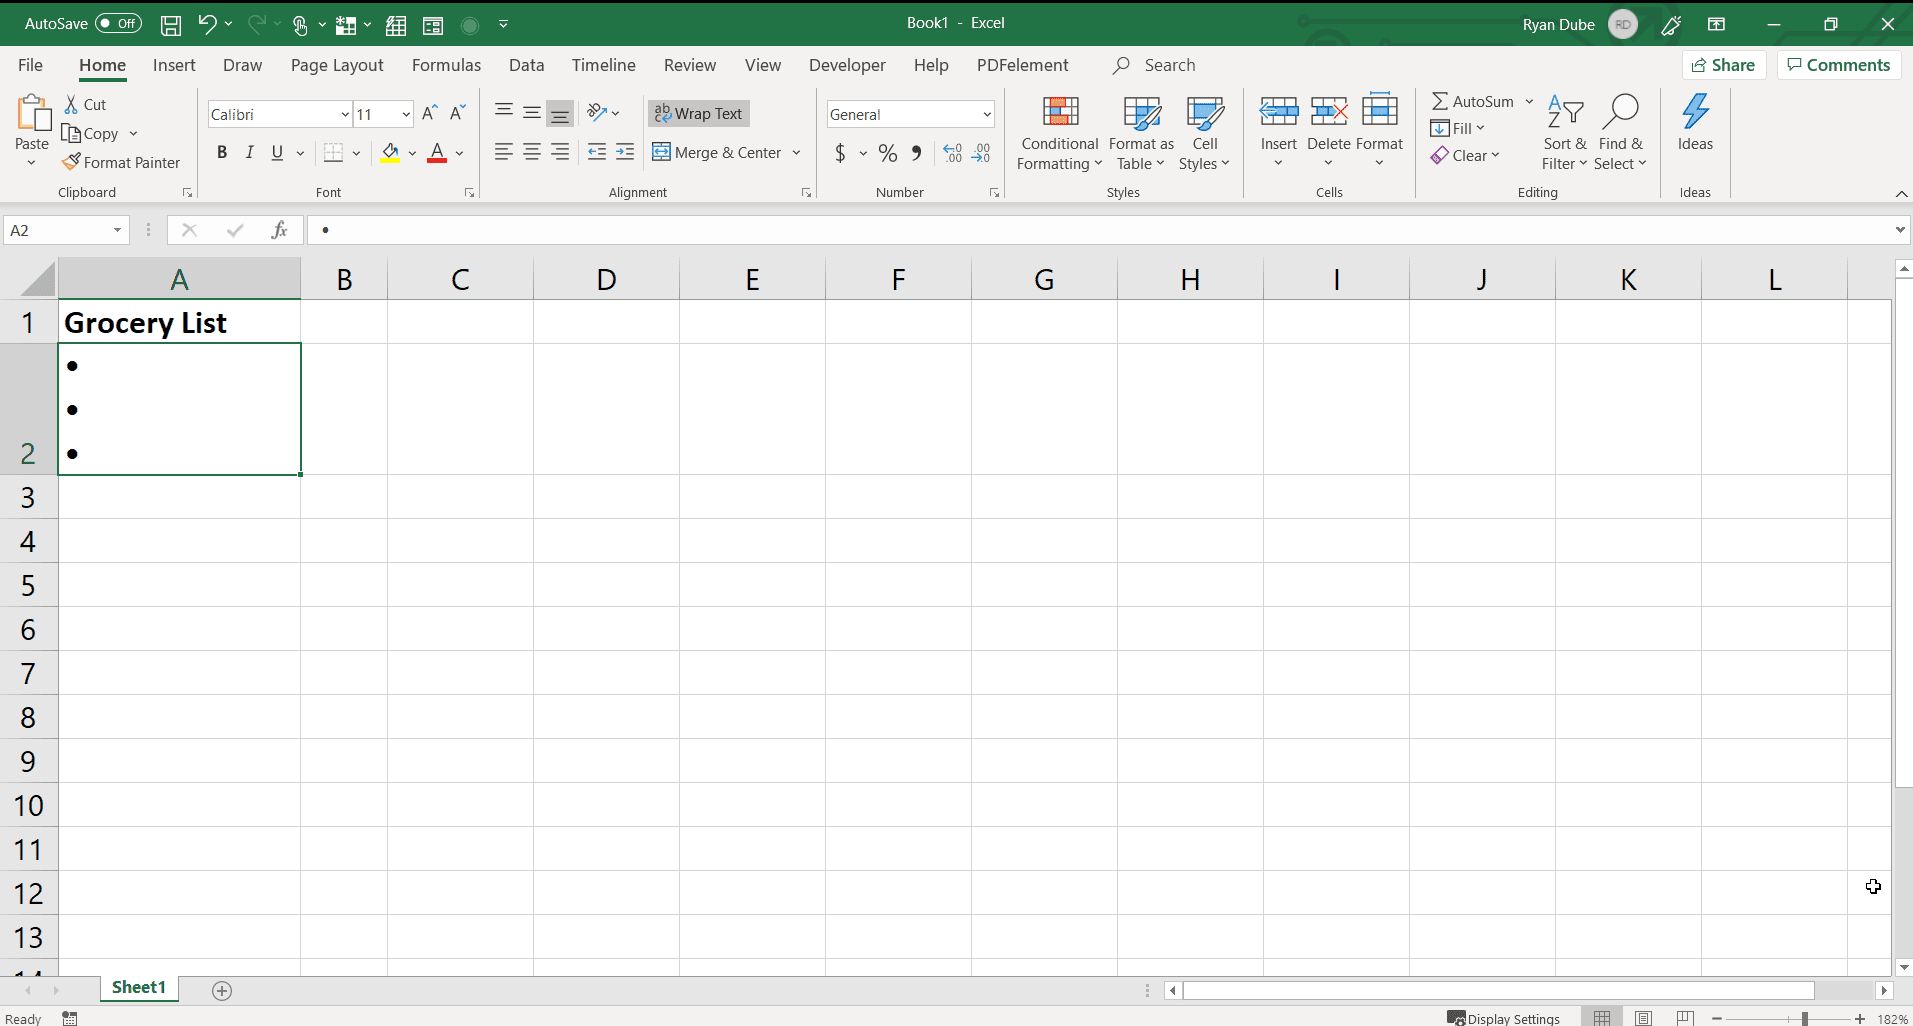 Skärmdump för att ange flera kulor i en cell i Excel